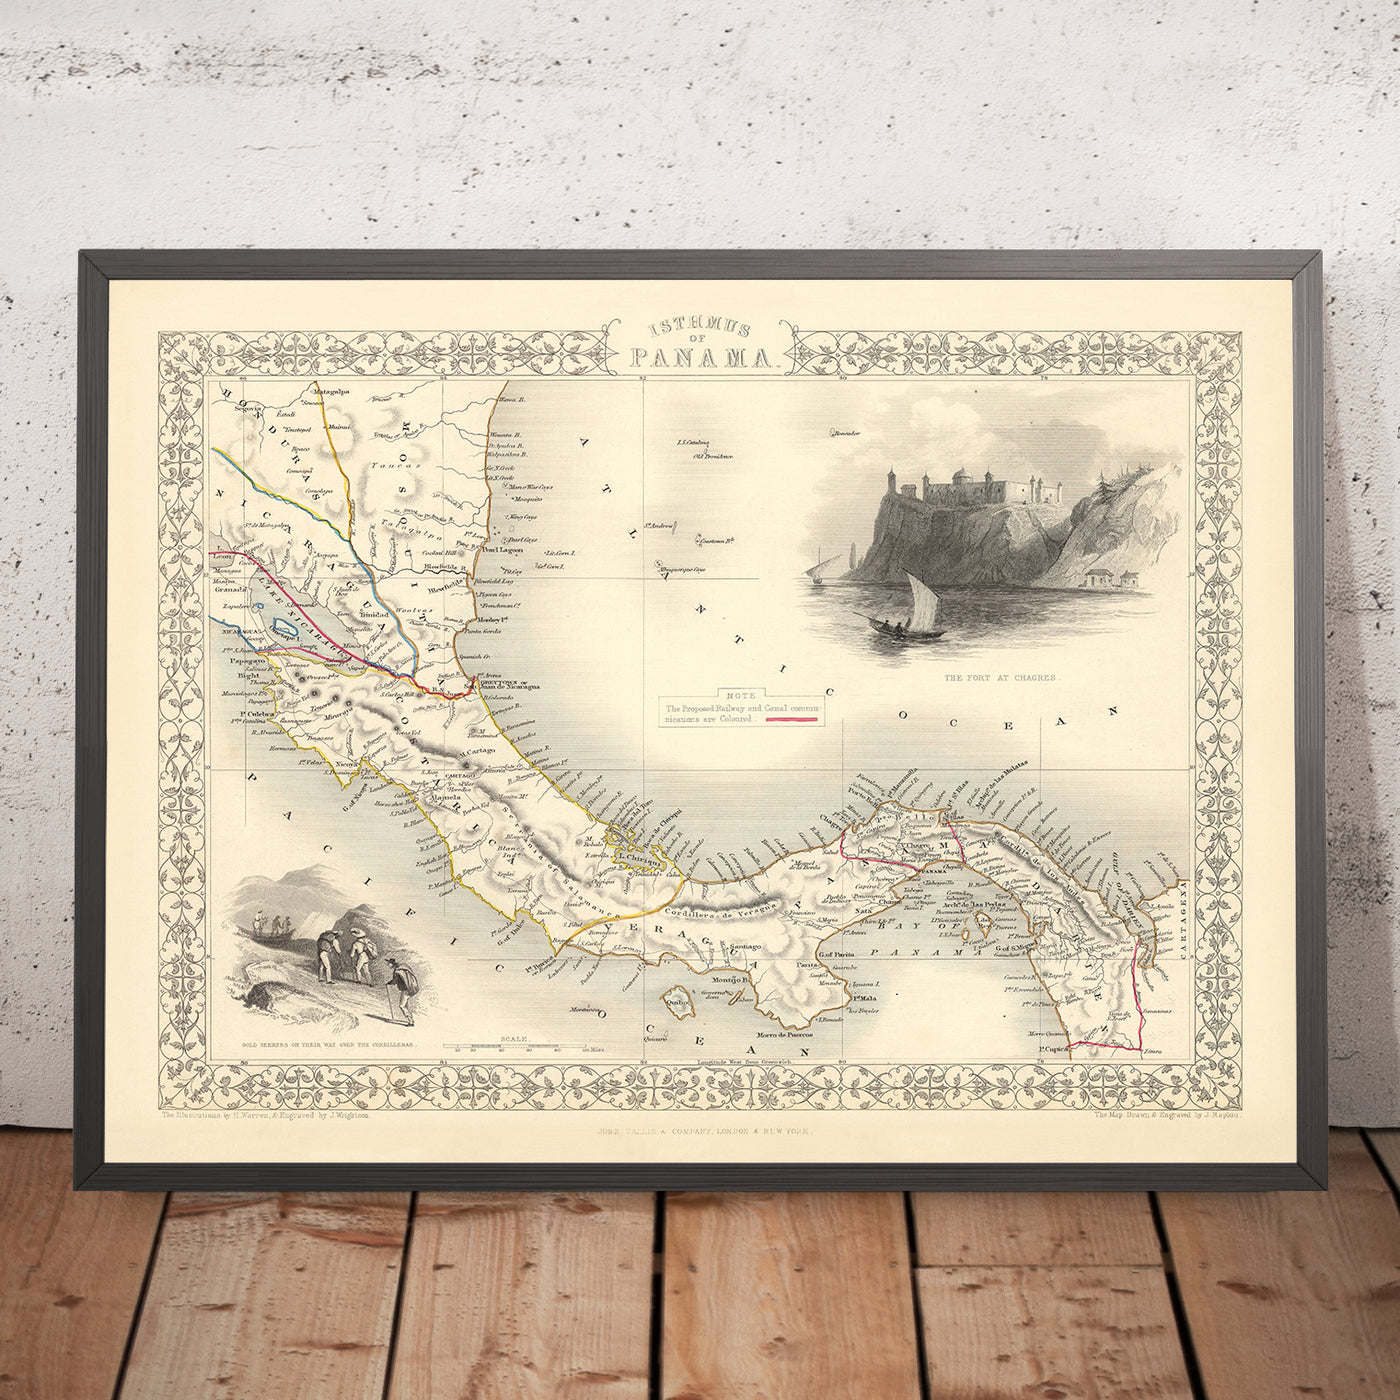 Ancienne carte détaillée du Panama par Tallis, 1851 : Canal de Panama, océan Pacifique, mer des Caraïbes, rivière Chagres, Cordillère de San Blas